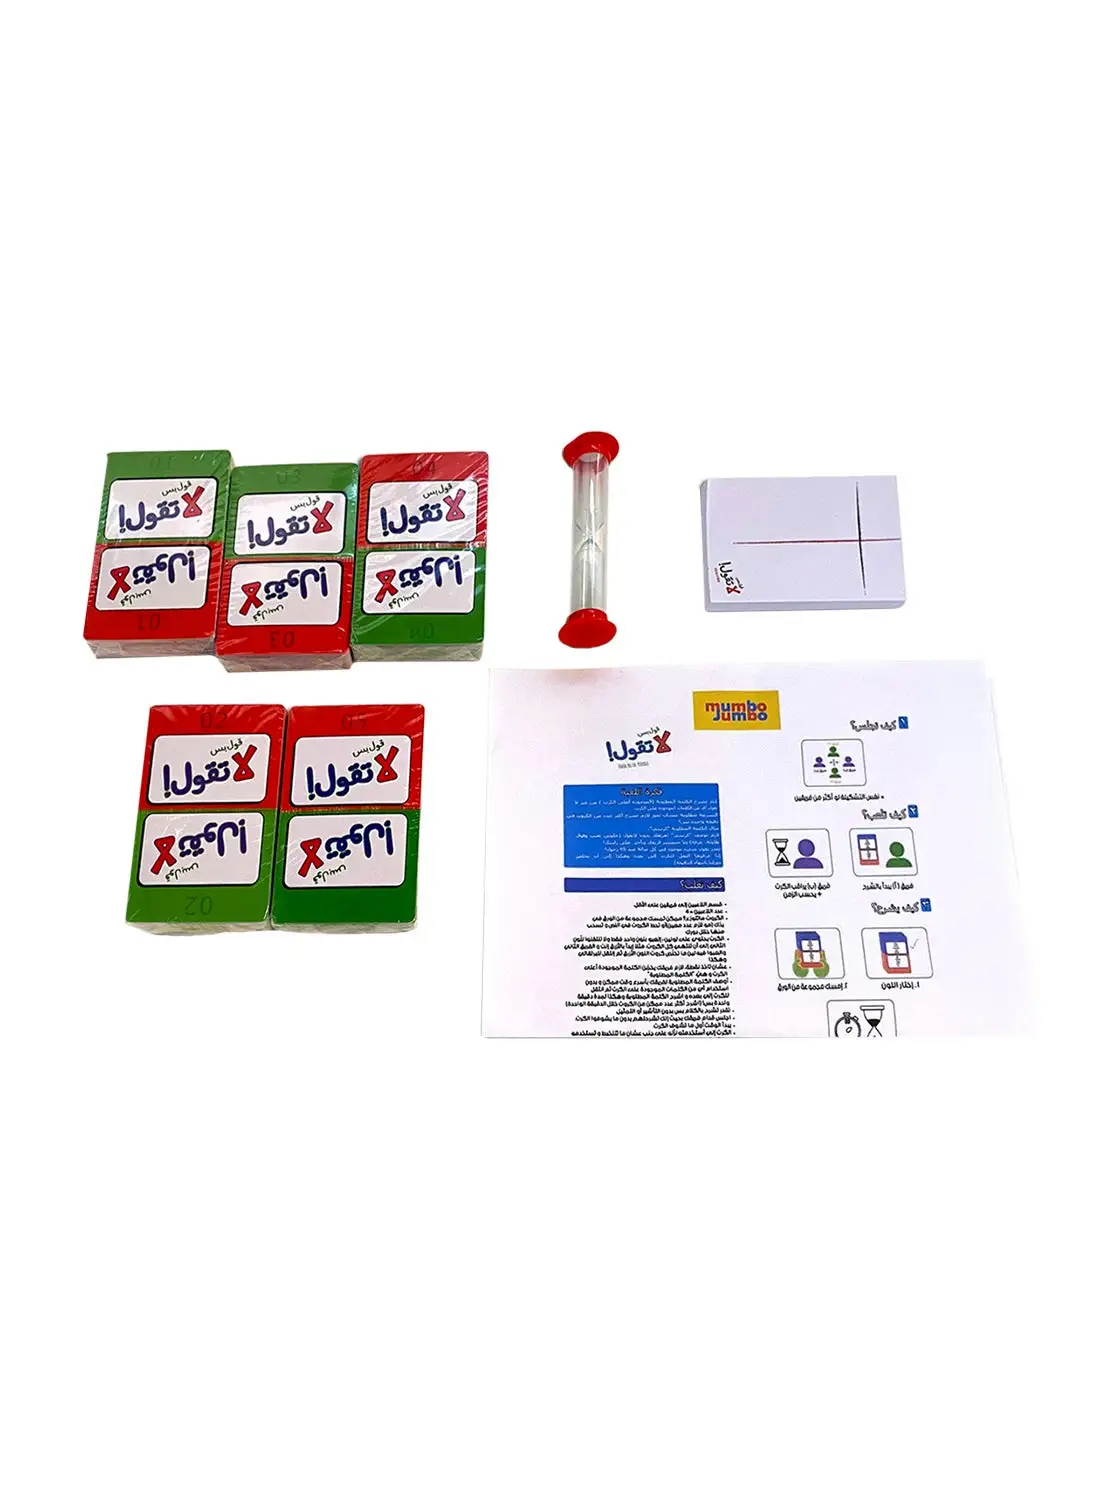 ممبو جامبو عربي جول بسلا تجول - لعبة بطاقة الوقت - صغير ، للأطفال 12 سنة فما فوق ، تعلم كل شيء عن الوقت دون صعوبة ، سهل الفهم مع ميزات التصميم الجرافيكي 20.5 × 26.5 × 5.5 سم